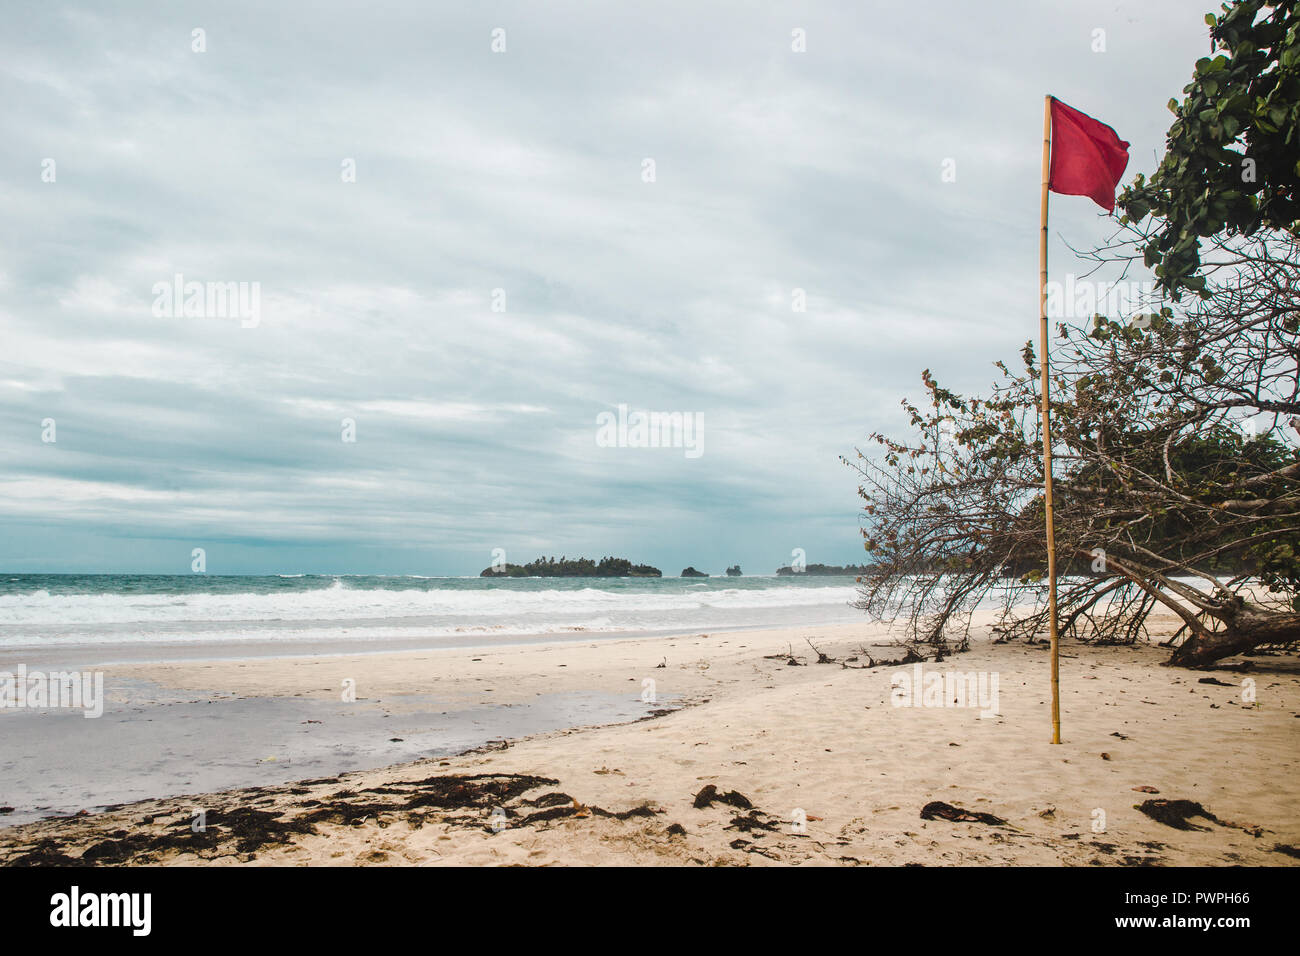 Bandiera rossa sulla ventosa di sabbia bianca di rana rossa Beach, un isola dei Caraibi al largo della costa di Panama Foto Stock